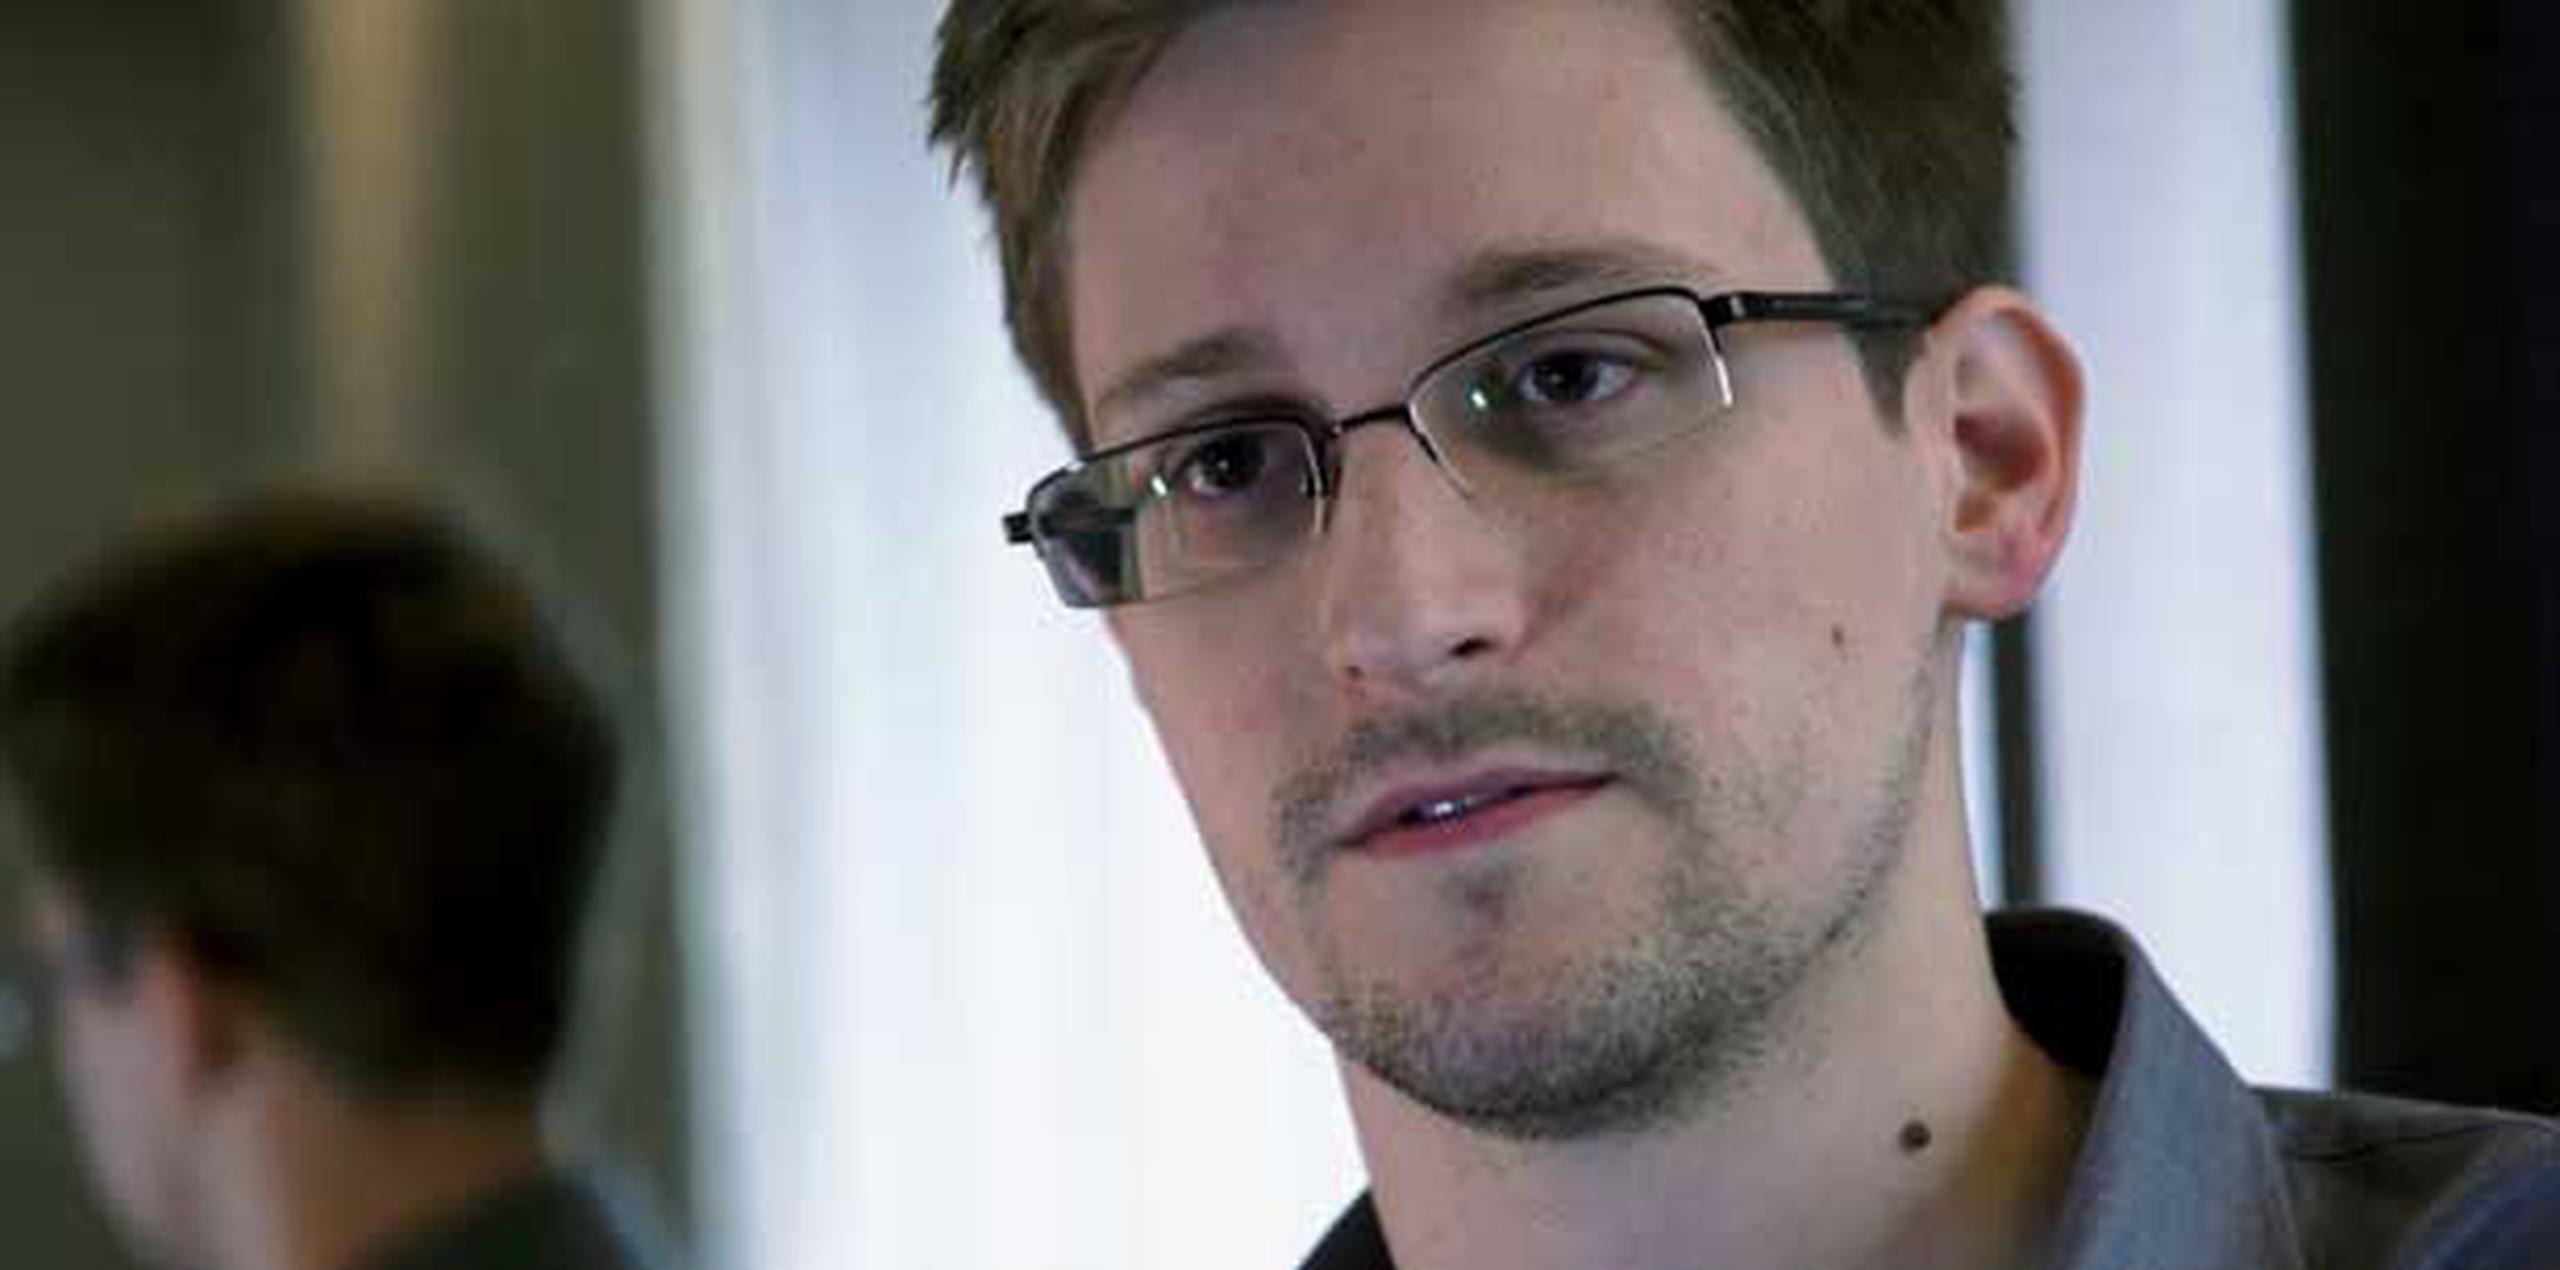 Edward Snowden, aseguran, se prepara para salir del área de tránsito del aerpuerto de Moscú. (AFP/Archivo/The Guardian)